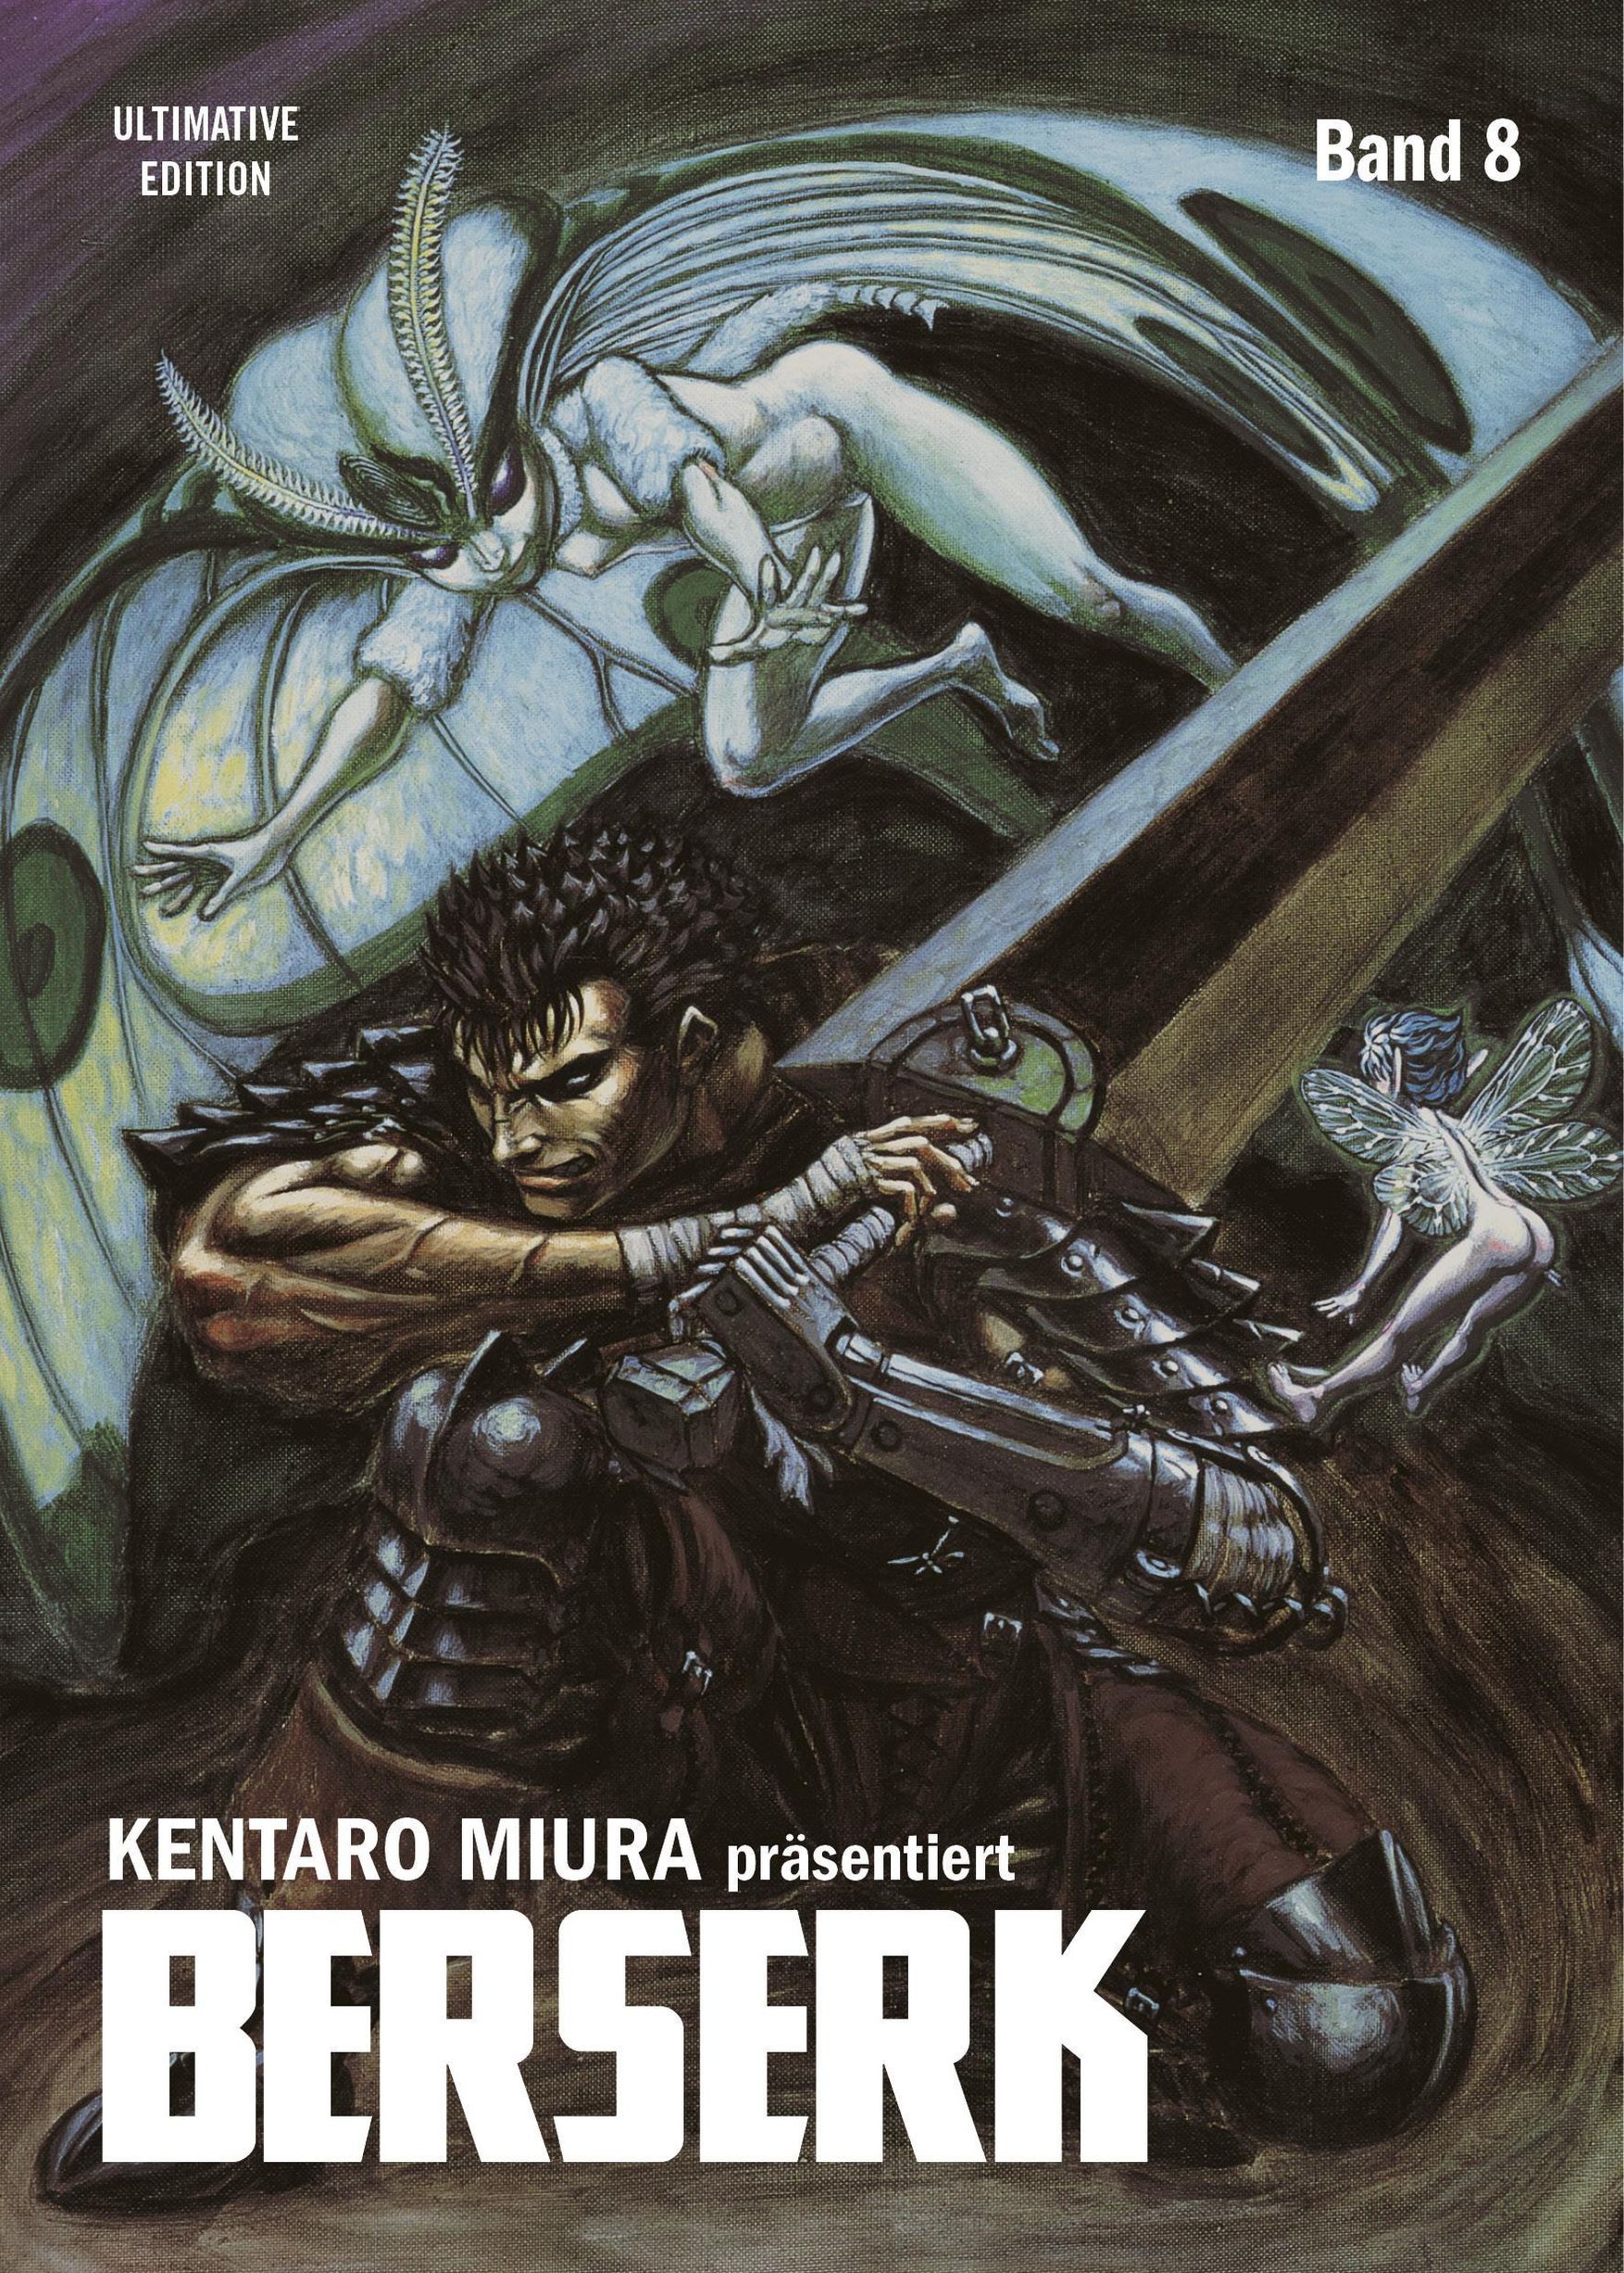 Maximum Berserk 15 Manga eBook by Kentaro Miura - EPUB Book